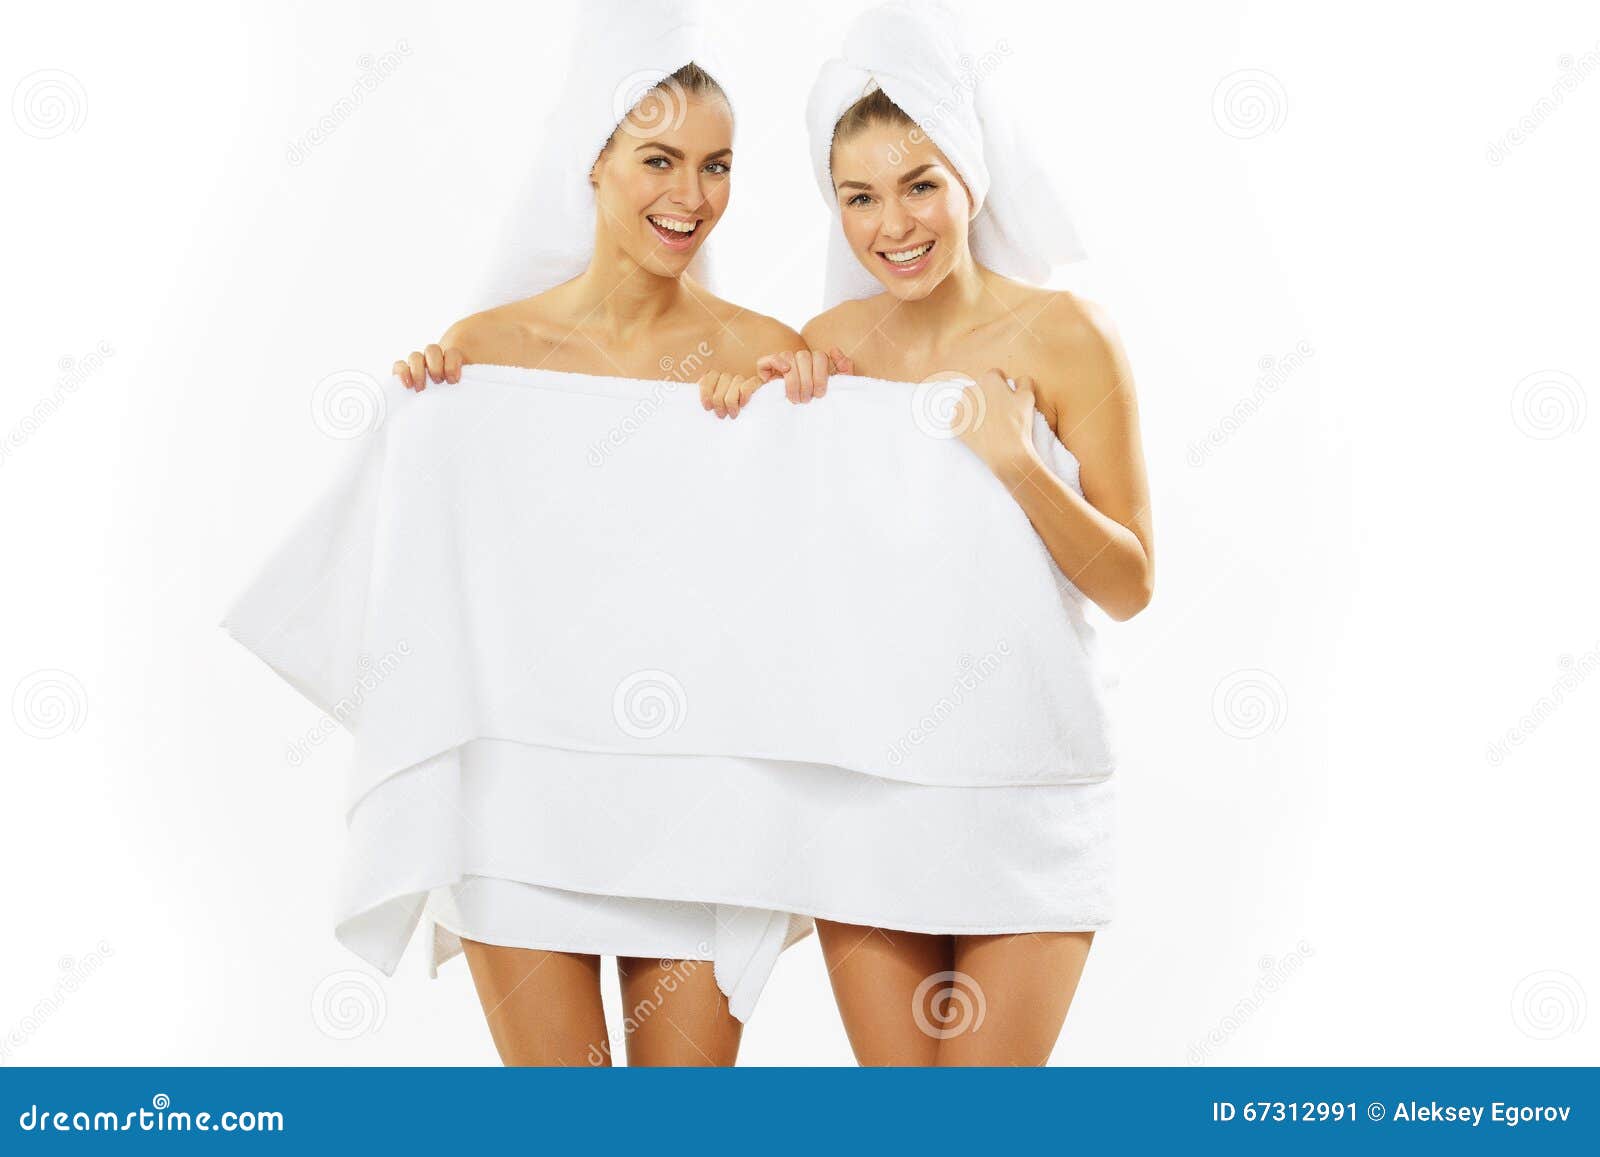 Любимая после душа. Подружки в полотенцах. Две девушки в полотенцах. Девушка в полотенце. Три девушки в полотенцах.